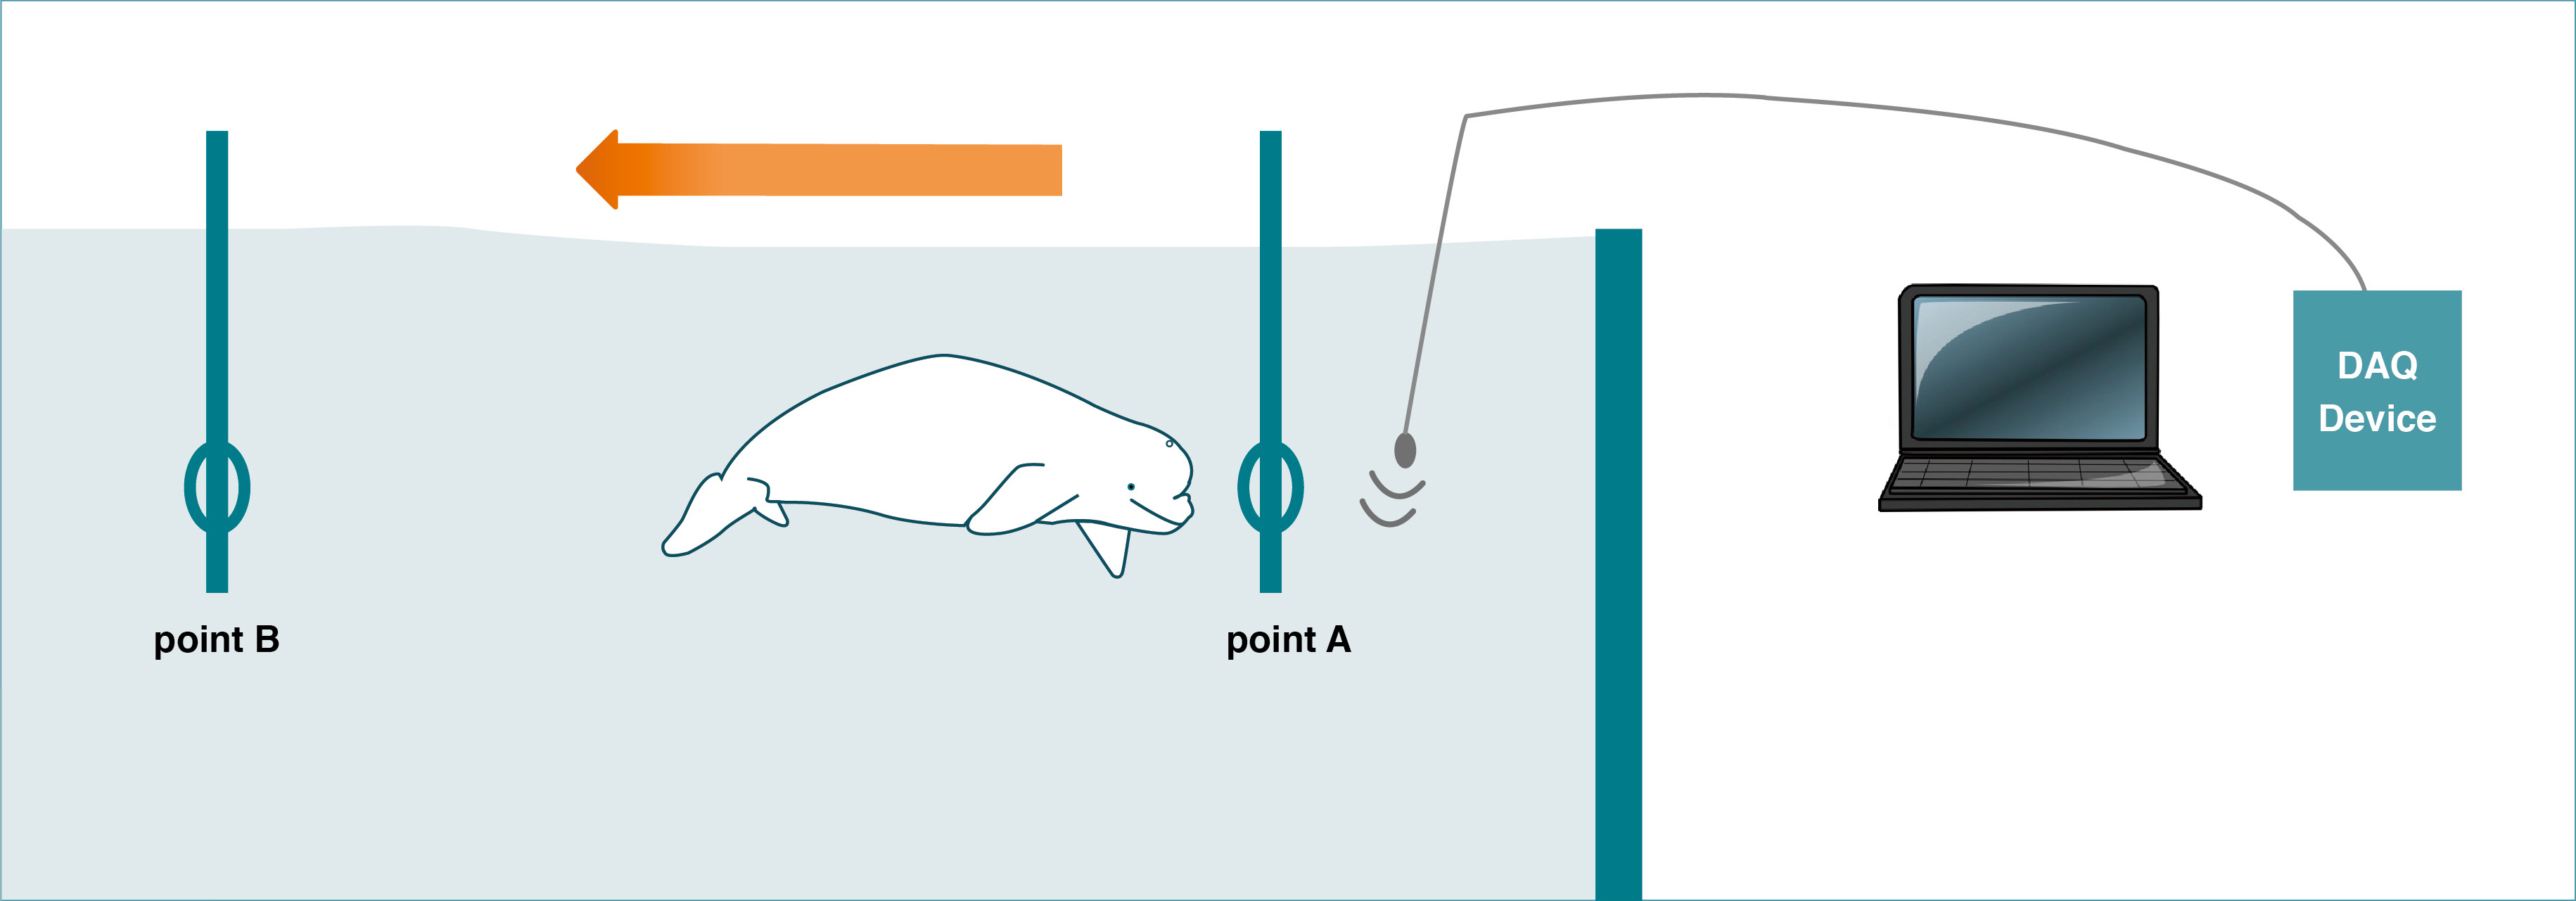 當白鯨聽到水下播放的聲音會即刻由A點游至B點，若聽不見聲音則不動，藉由這些行為來判斷白鯨是否聽到聲音。